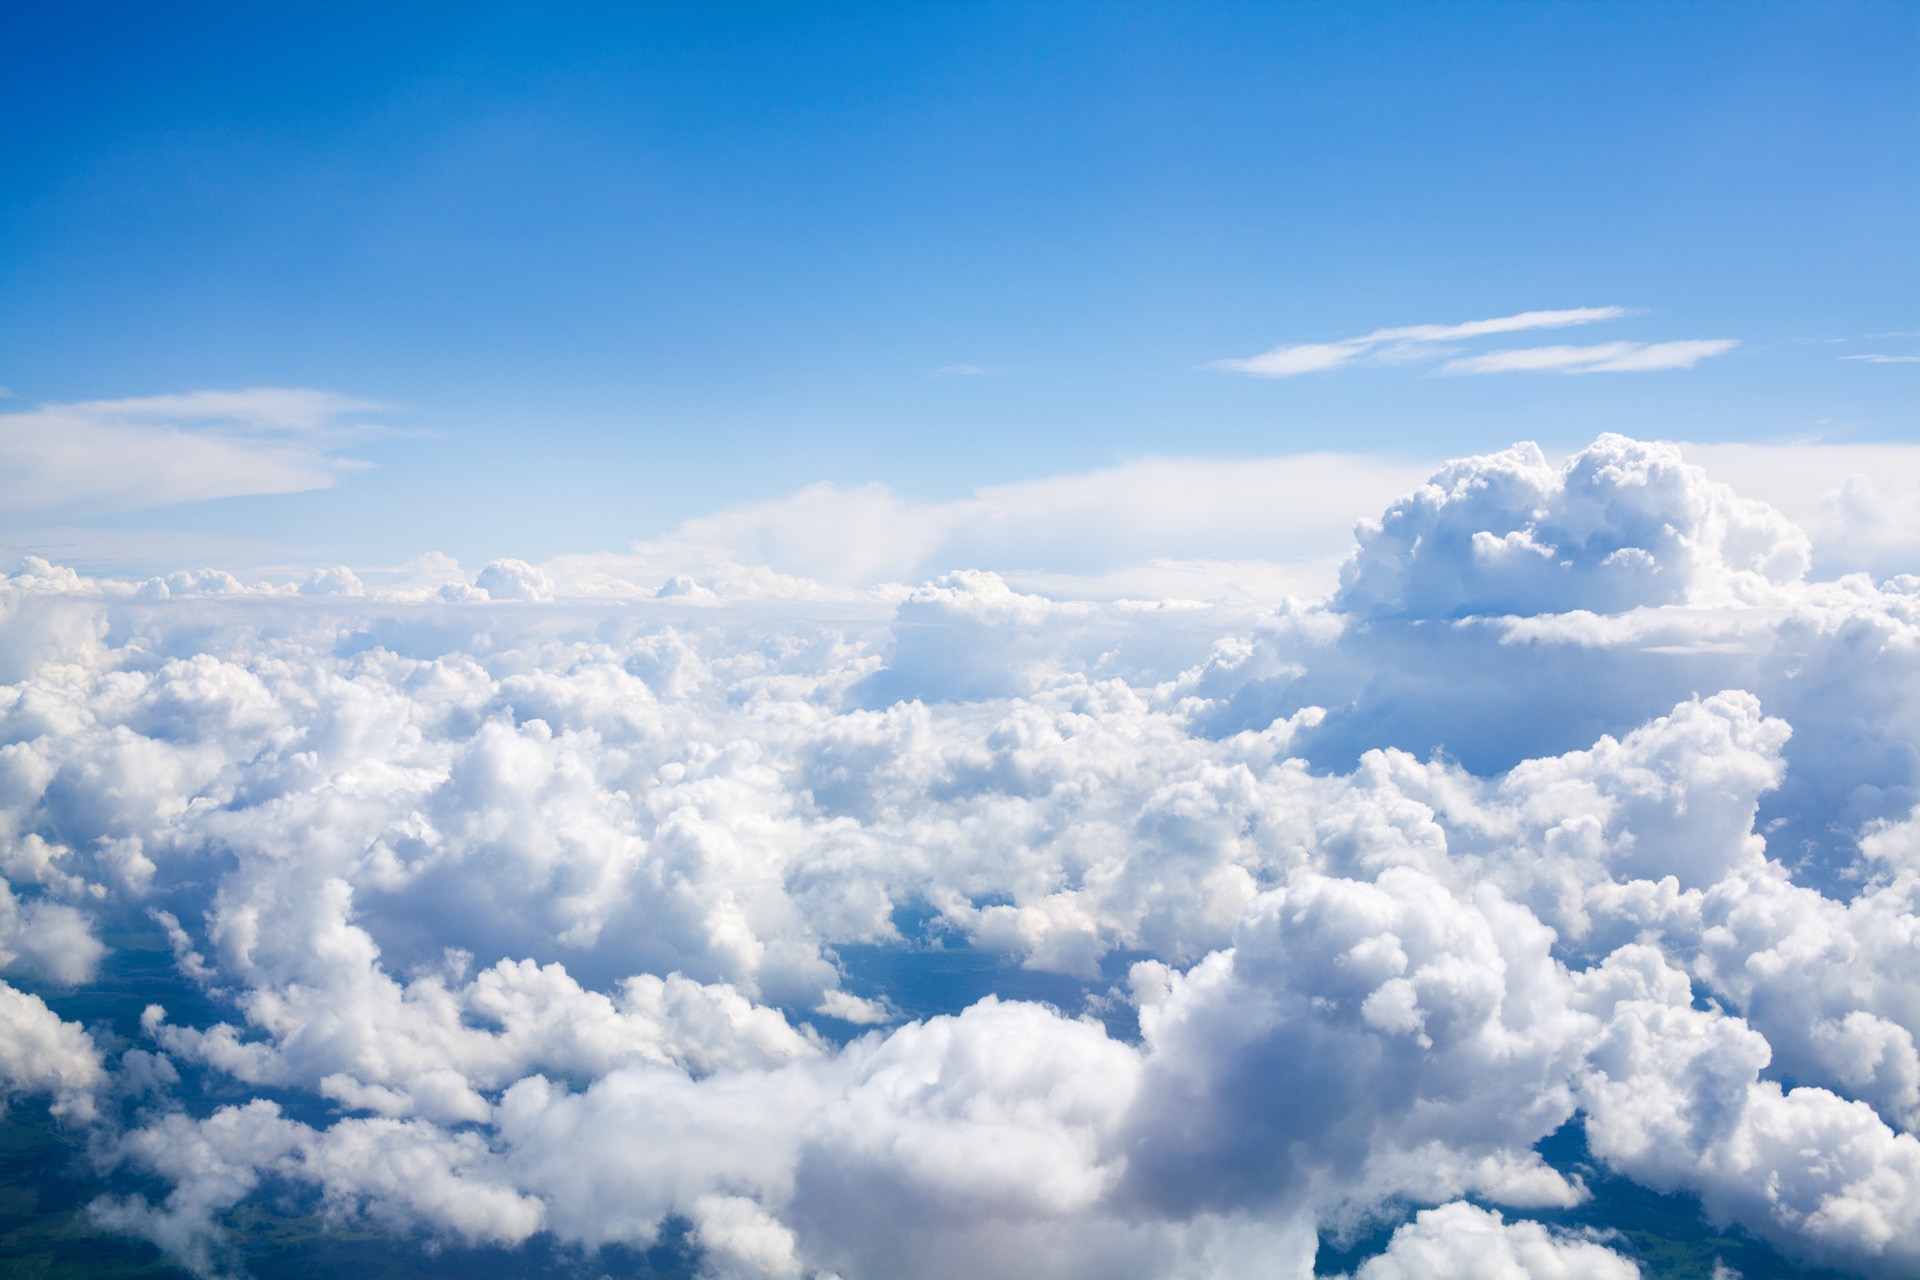 Les nuages ne seraient pas uniquement de la vapeur d'eau comme on le pense souvent. © Vera NewSib, Adobe Stock